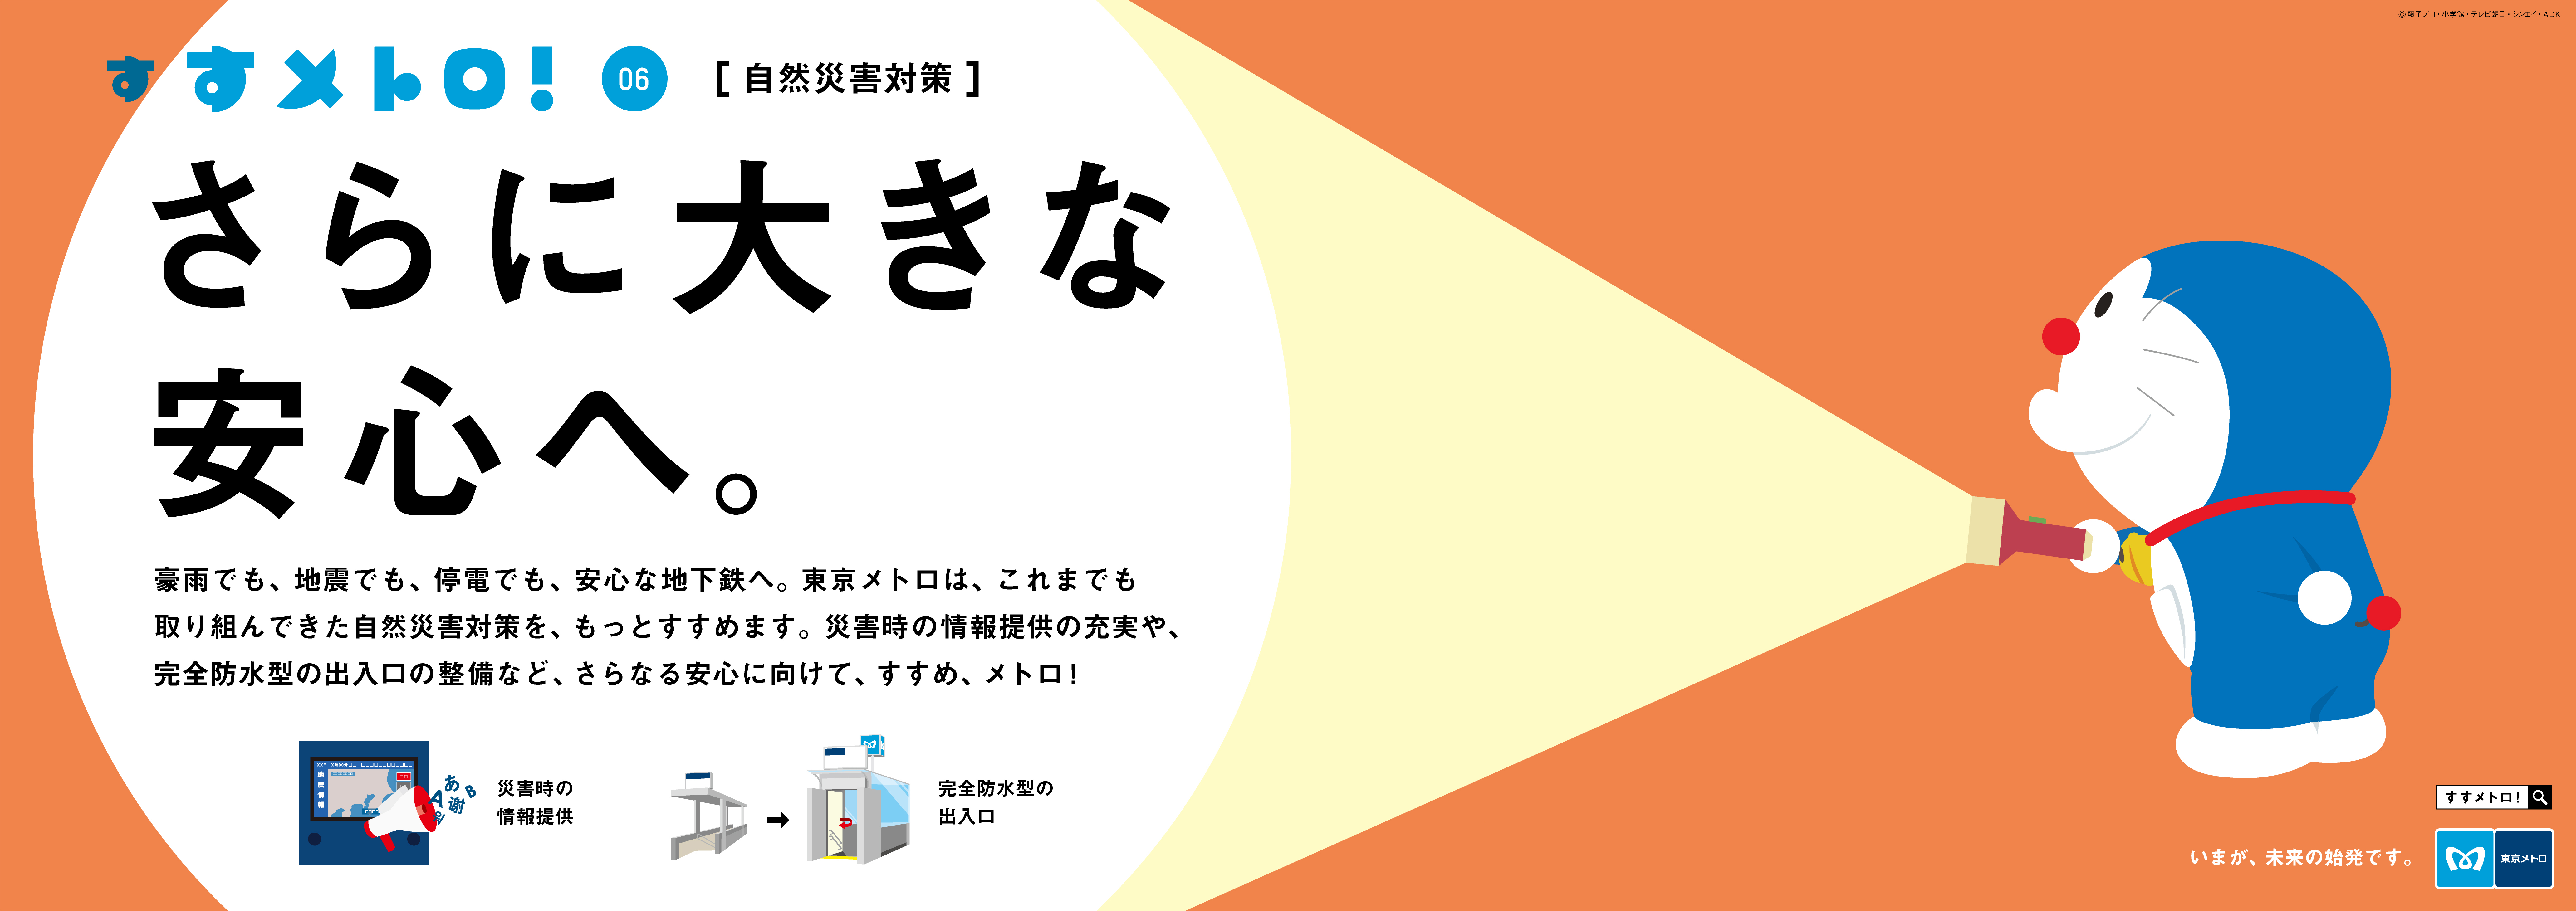 東京メトロとドラえもんの すすメトロ キャンペーン第6弾 自然災害対策 篇がスタート 東京メトロのプレスリリース